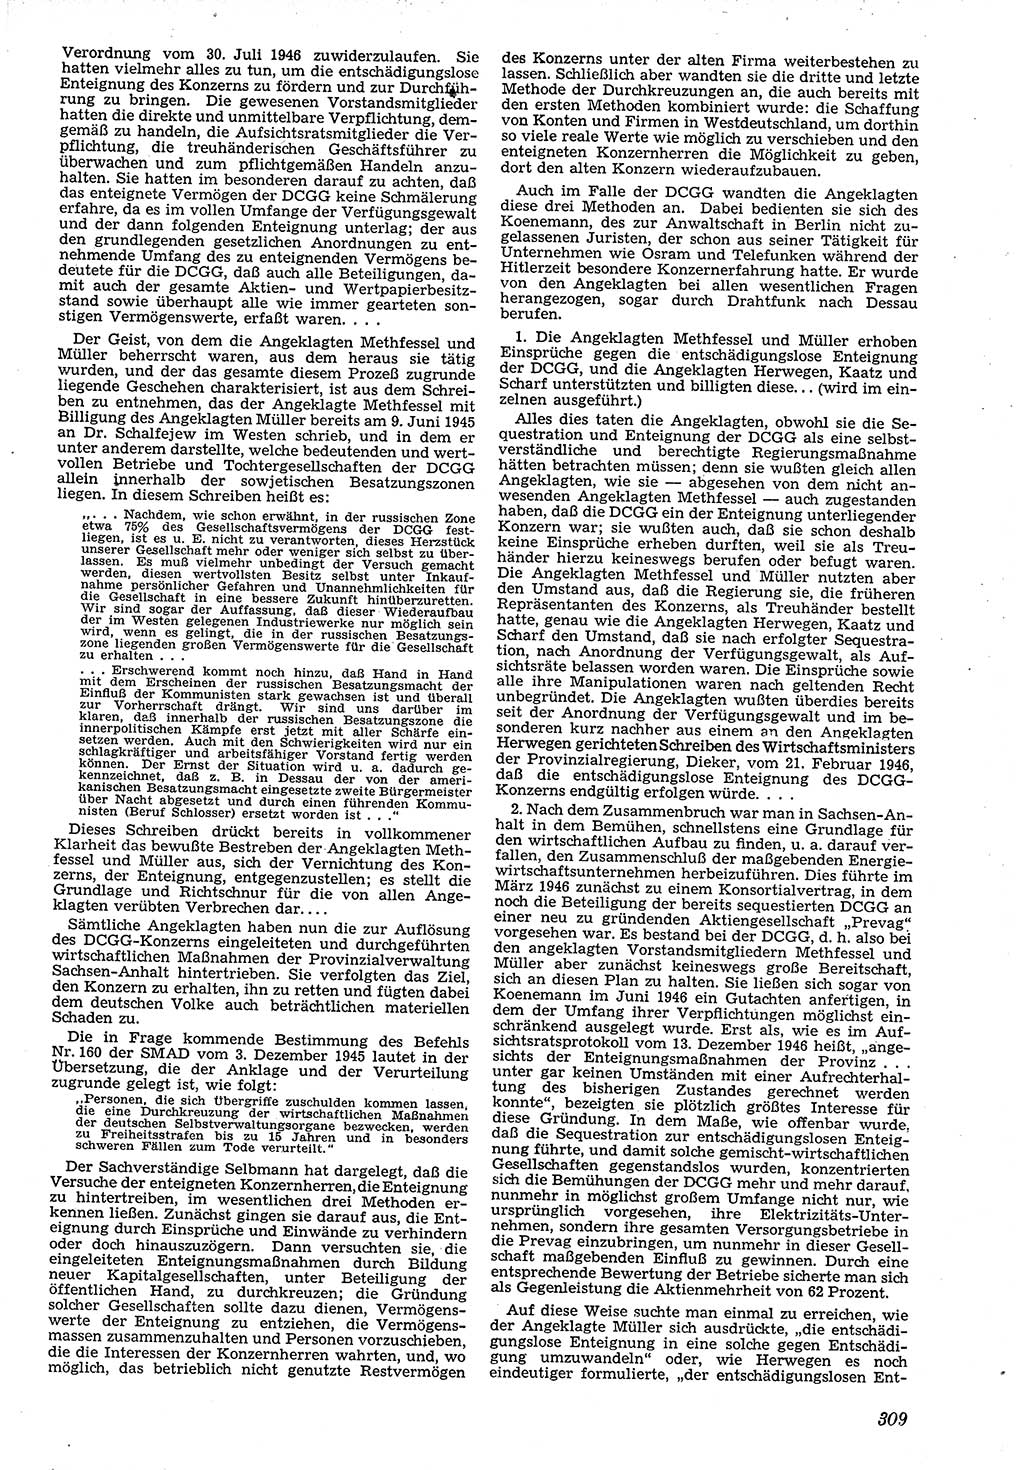 Neue Justiz (NJ), Zeitschrift für Recht und Rechtswissenschaft [Deutsche Demokratische Republik (DDR)], 4. Jahrgang 1950, Seite 309 (NJ DDR 1950, S. 309)